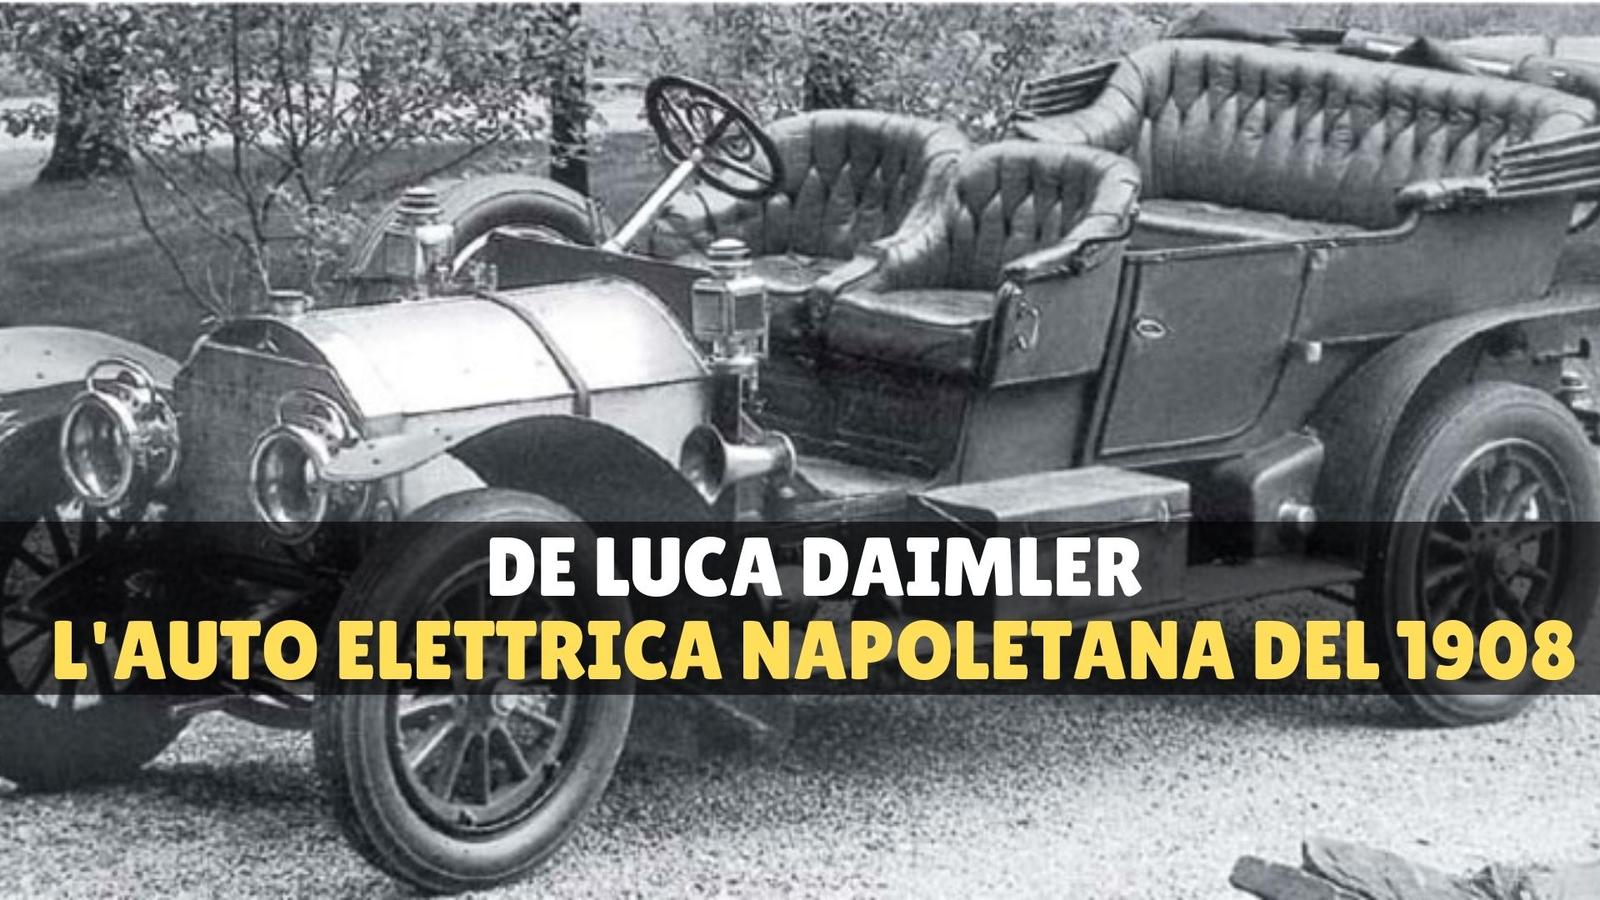 Storia della De Luca Daimler, che realizzò la prima auto elettrica napoletana nel 1908